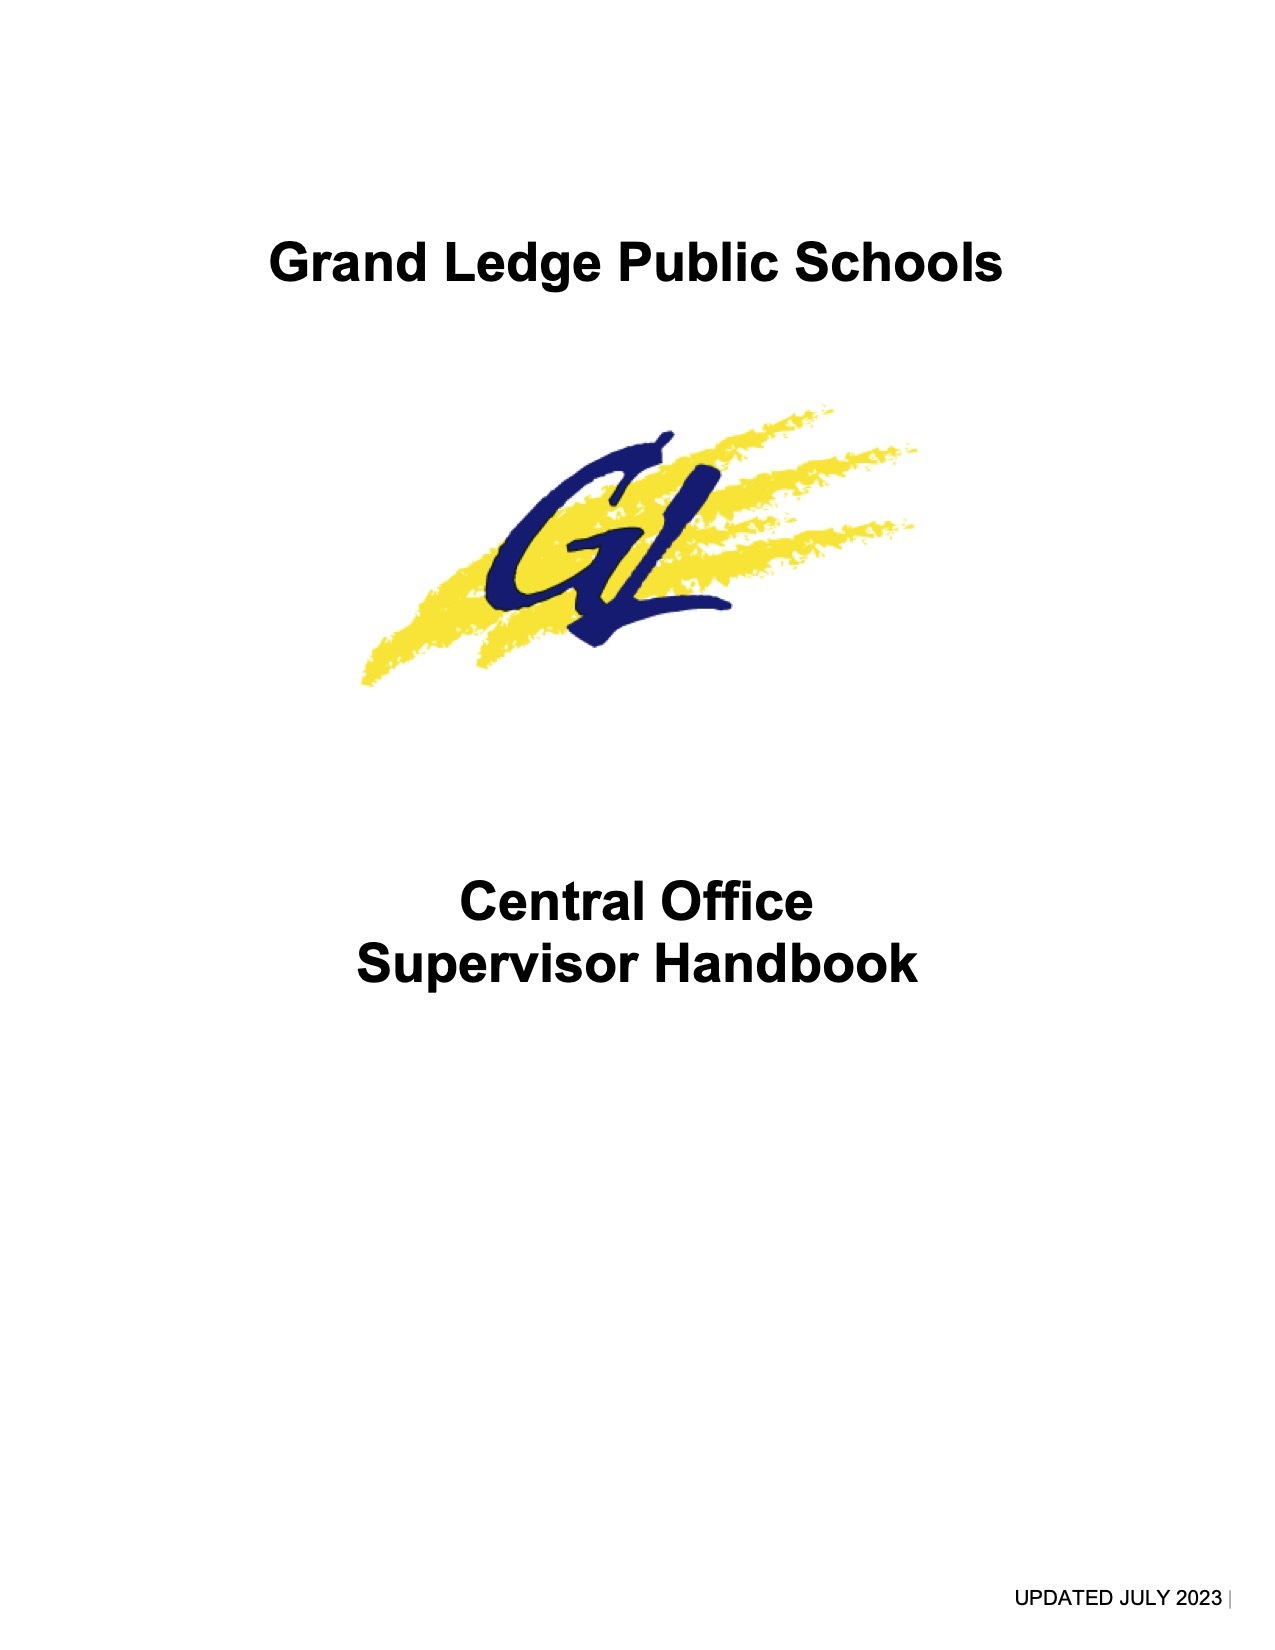 Central Office Supervisor Handbook